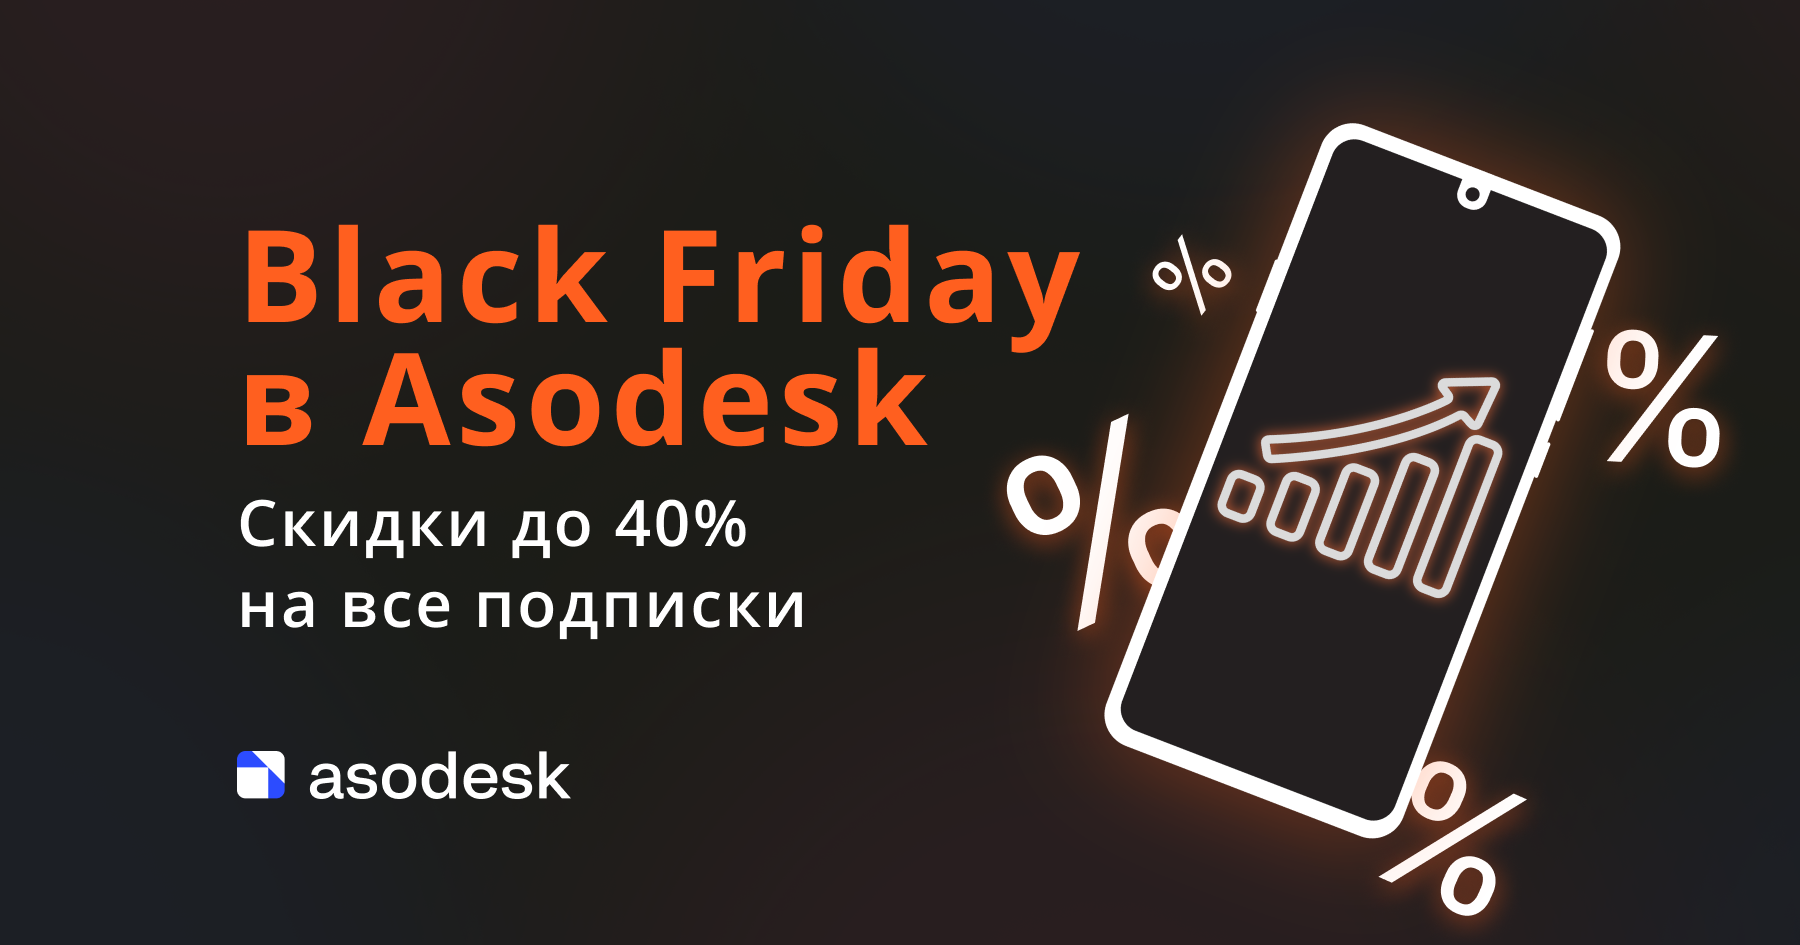 Black Friday в Asodesk: скидки до 40% на все подписки